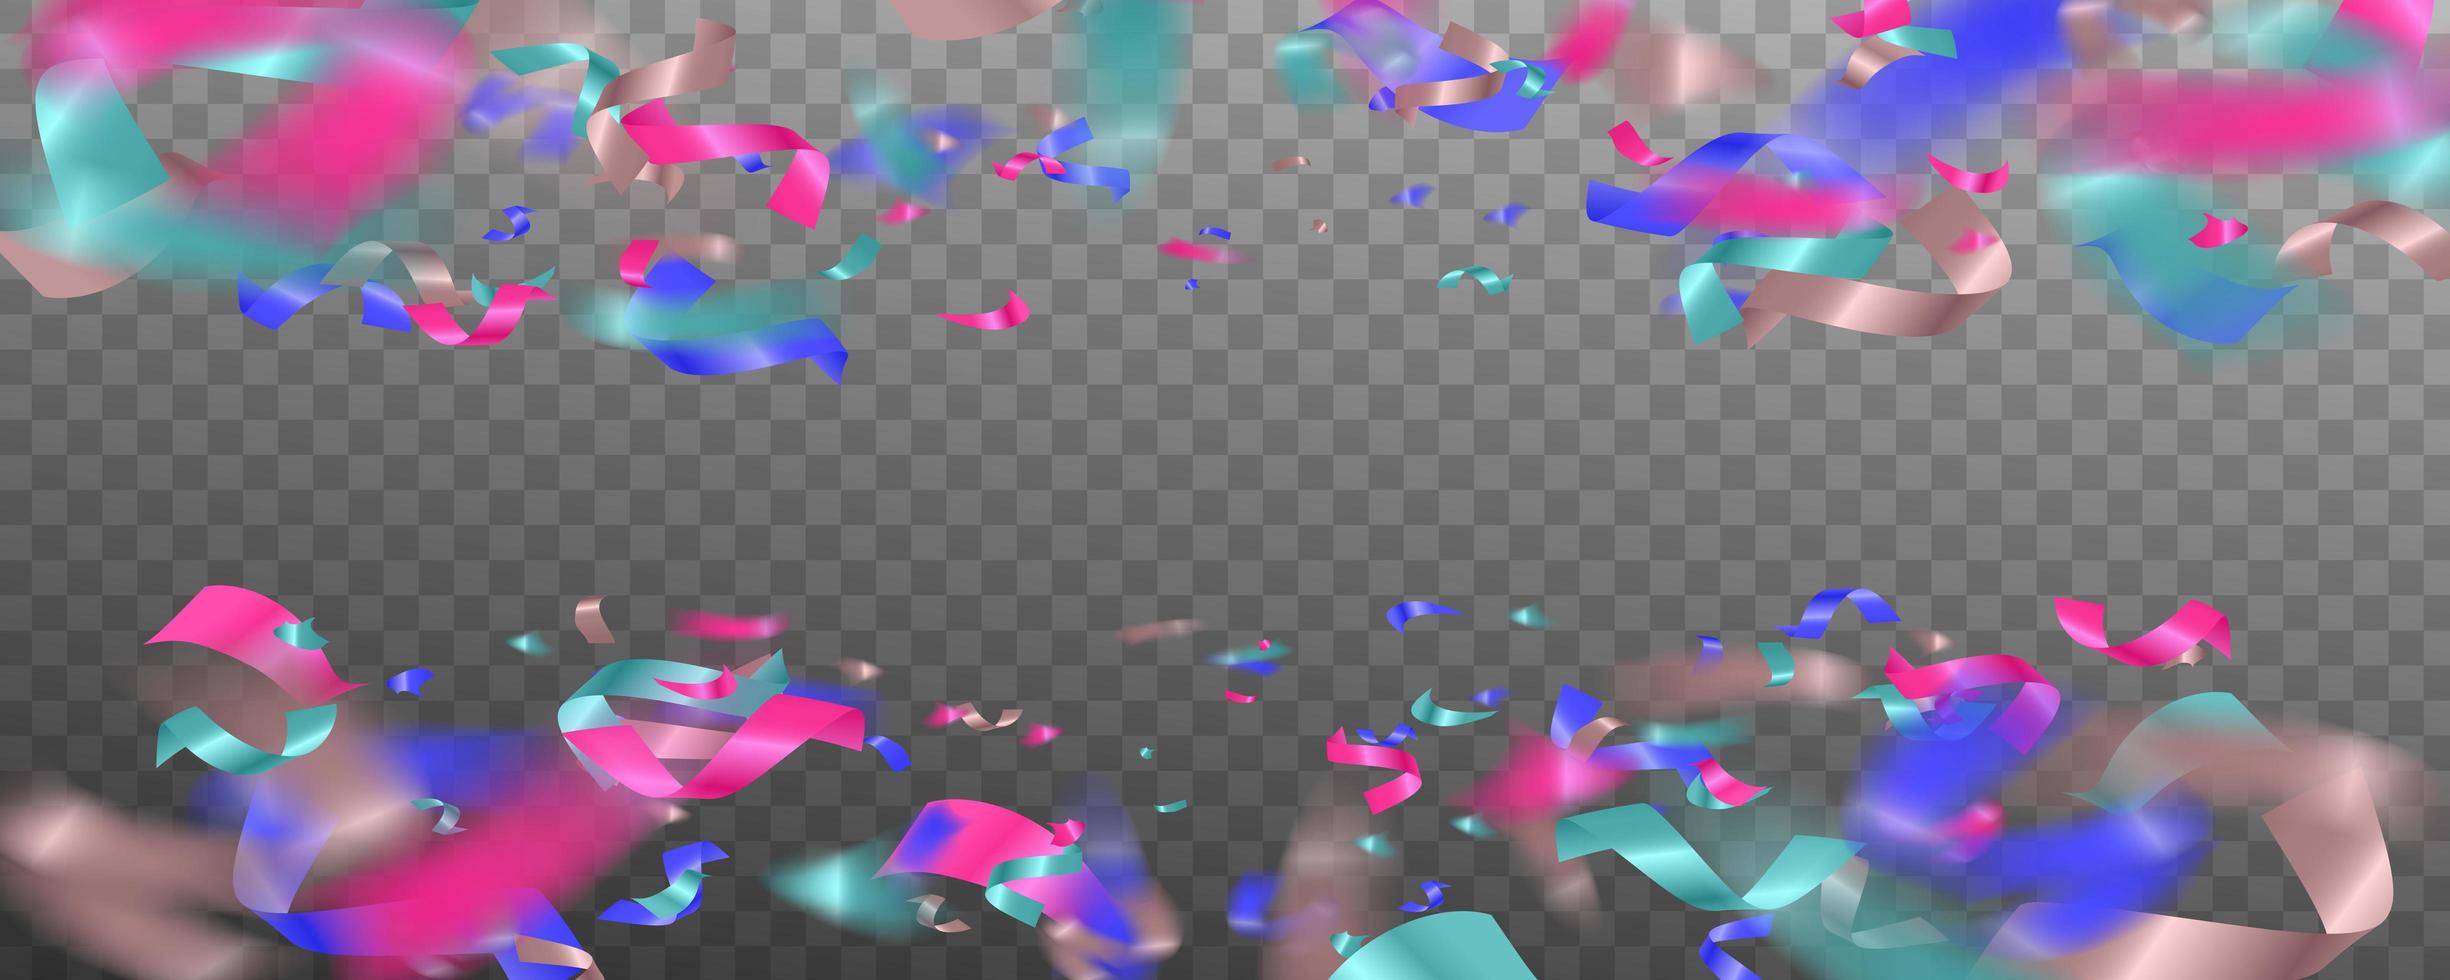 kleurrijke heldere confetti geïsoleerd op transparante achtergrond. abstracte achtergrond met veel vallende kleine confetti-stukjes. vector